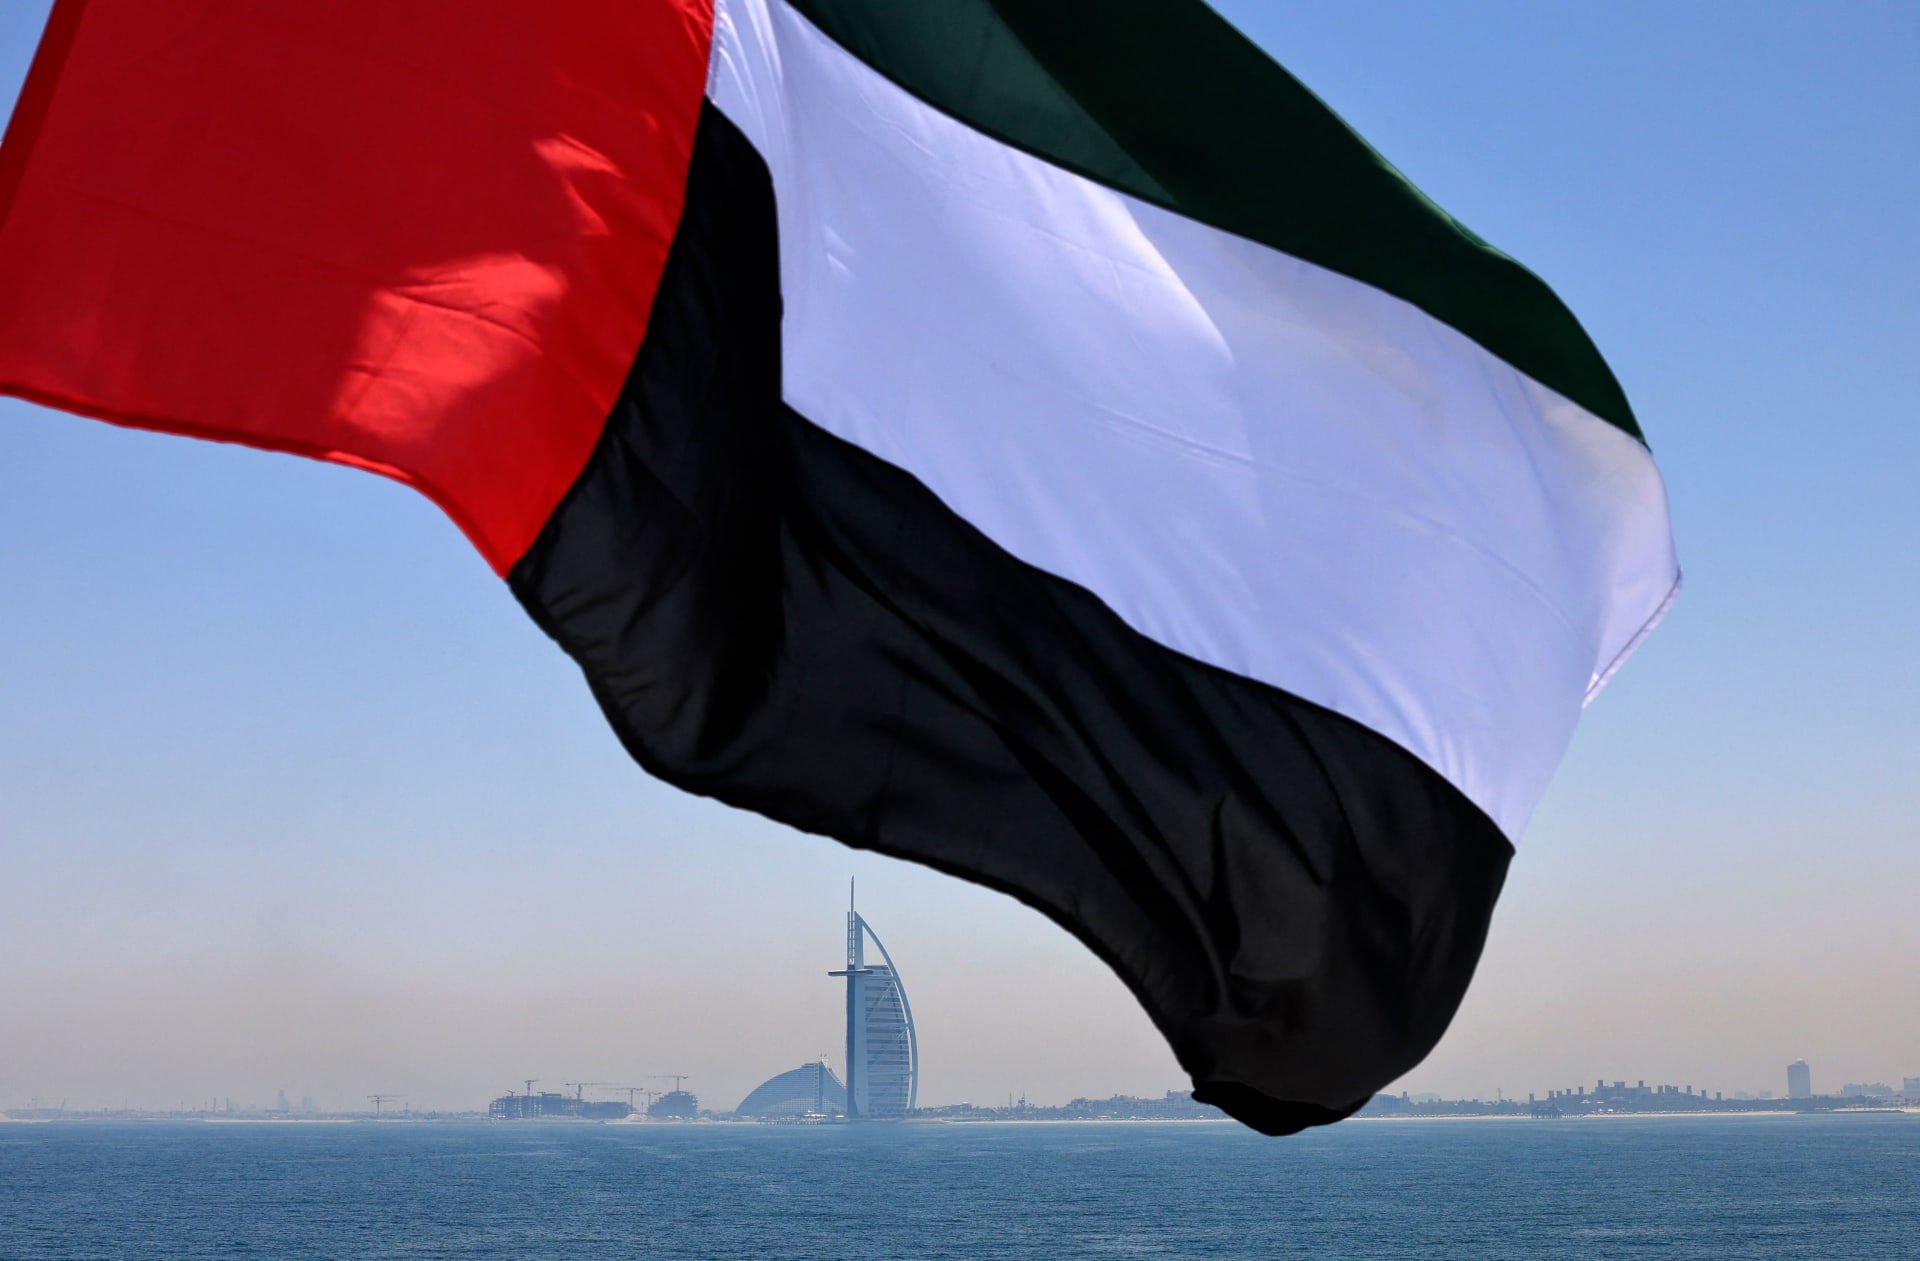 الإمارات توجه نصائح لمواطنيها المسافرين إلى بعض الدول الأوربية لـ"تجنب السرقة"